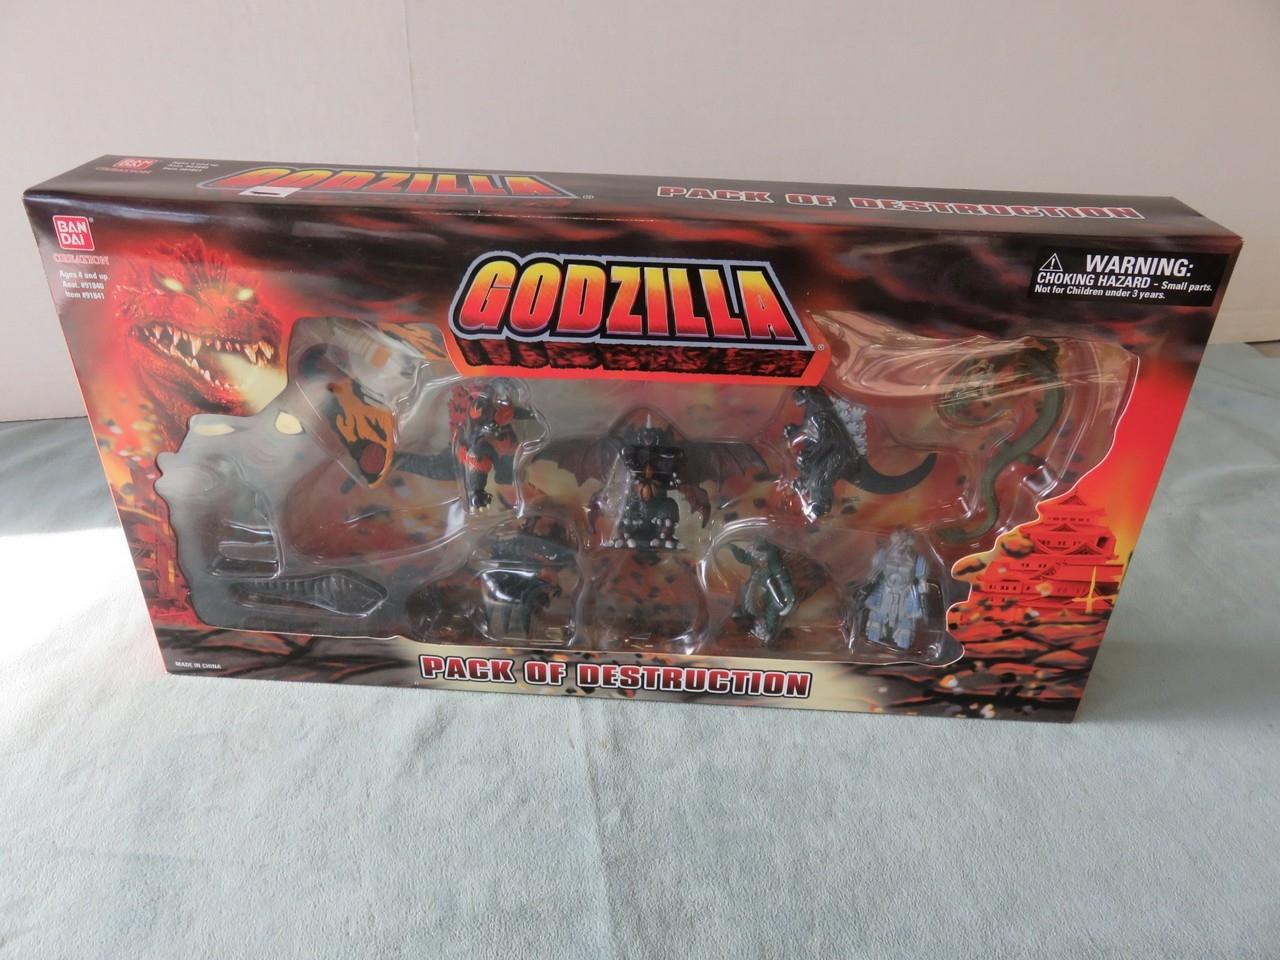 Godzilla Pack of Destruction Bandai